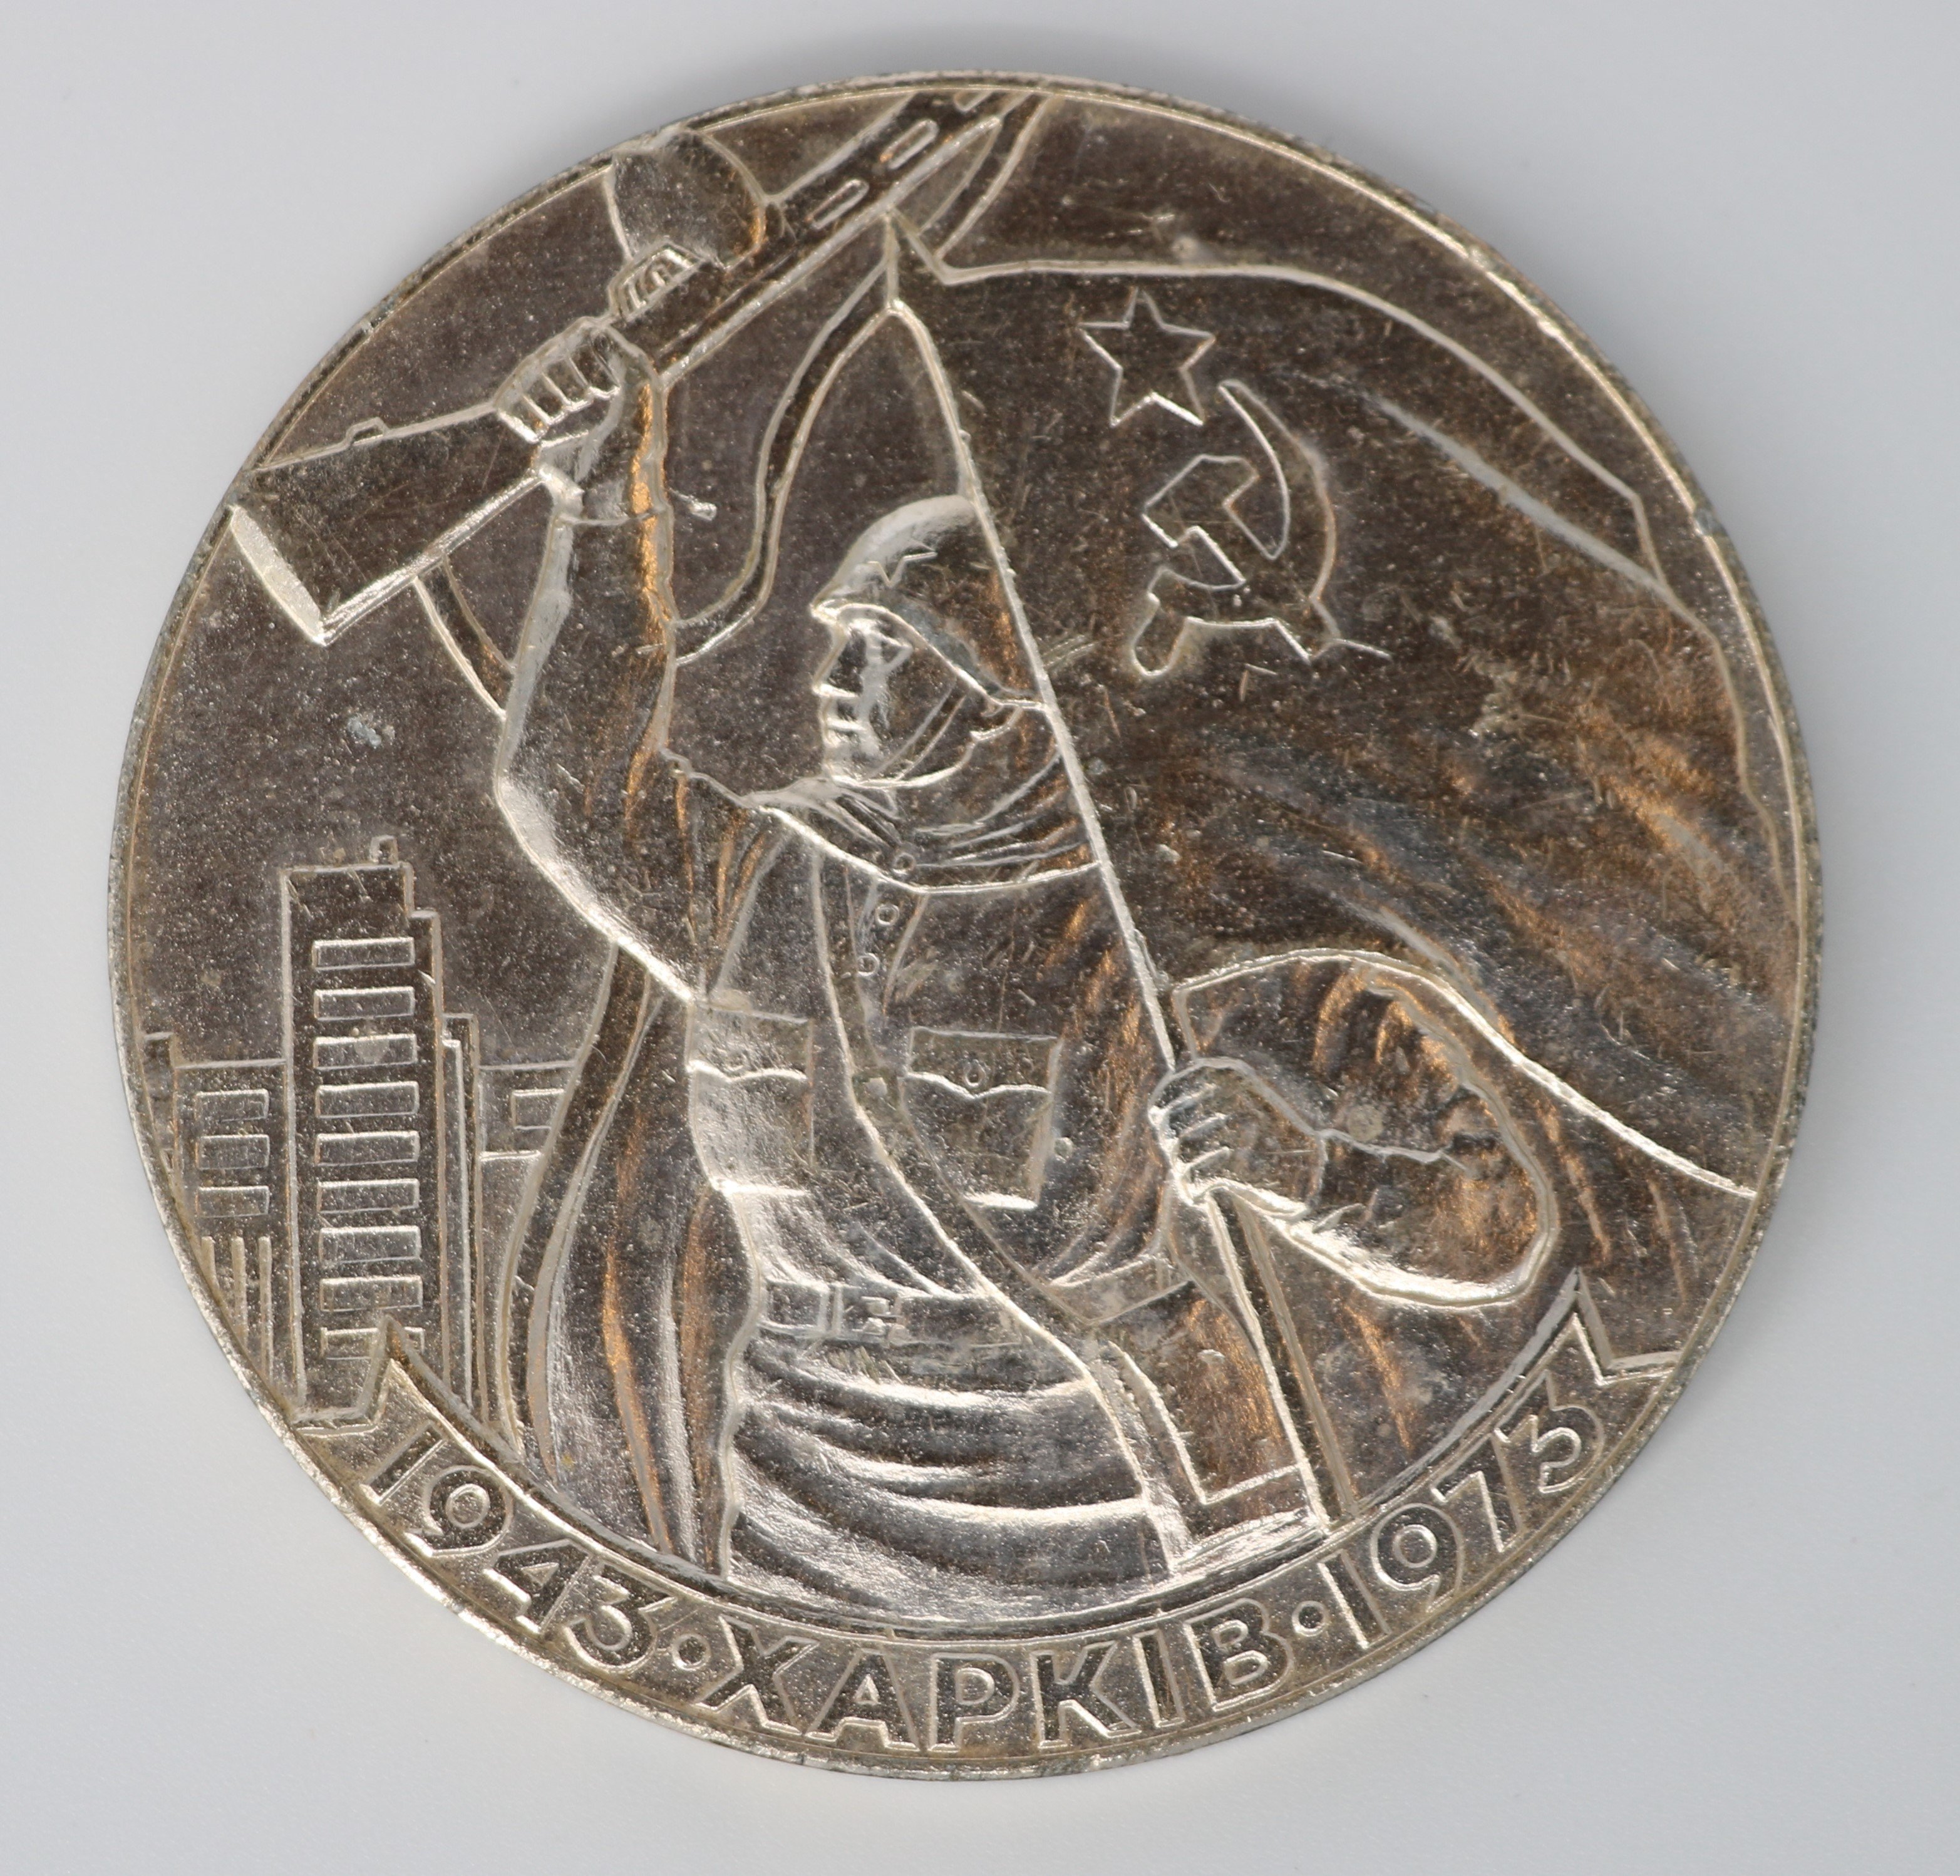 Medaille zum 30. Jahrestag anlässlich der Befreiung von Charkiw, Ukraine, 1973 (Museum Berlin-Karlshorst CC BY-NC-SA)